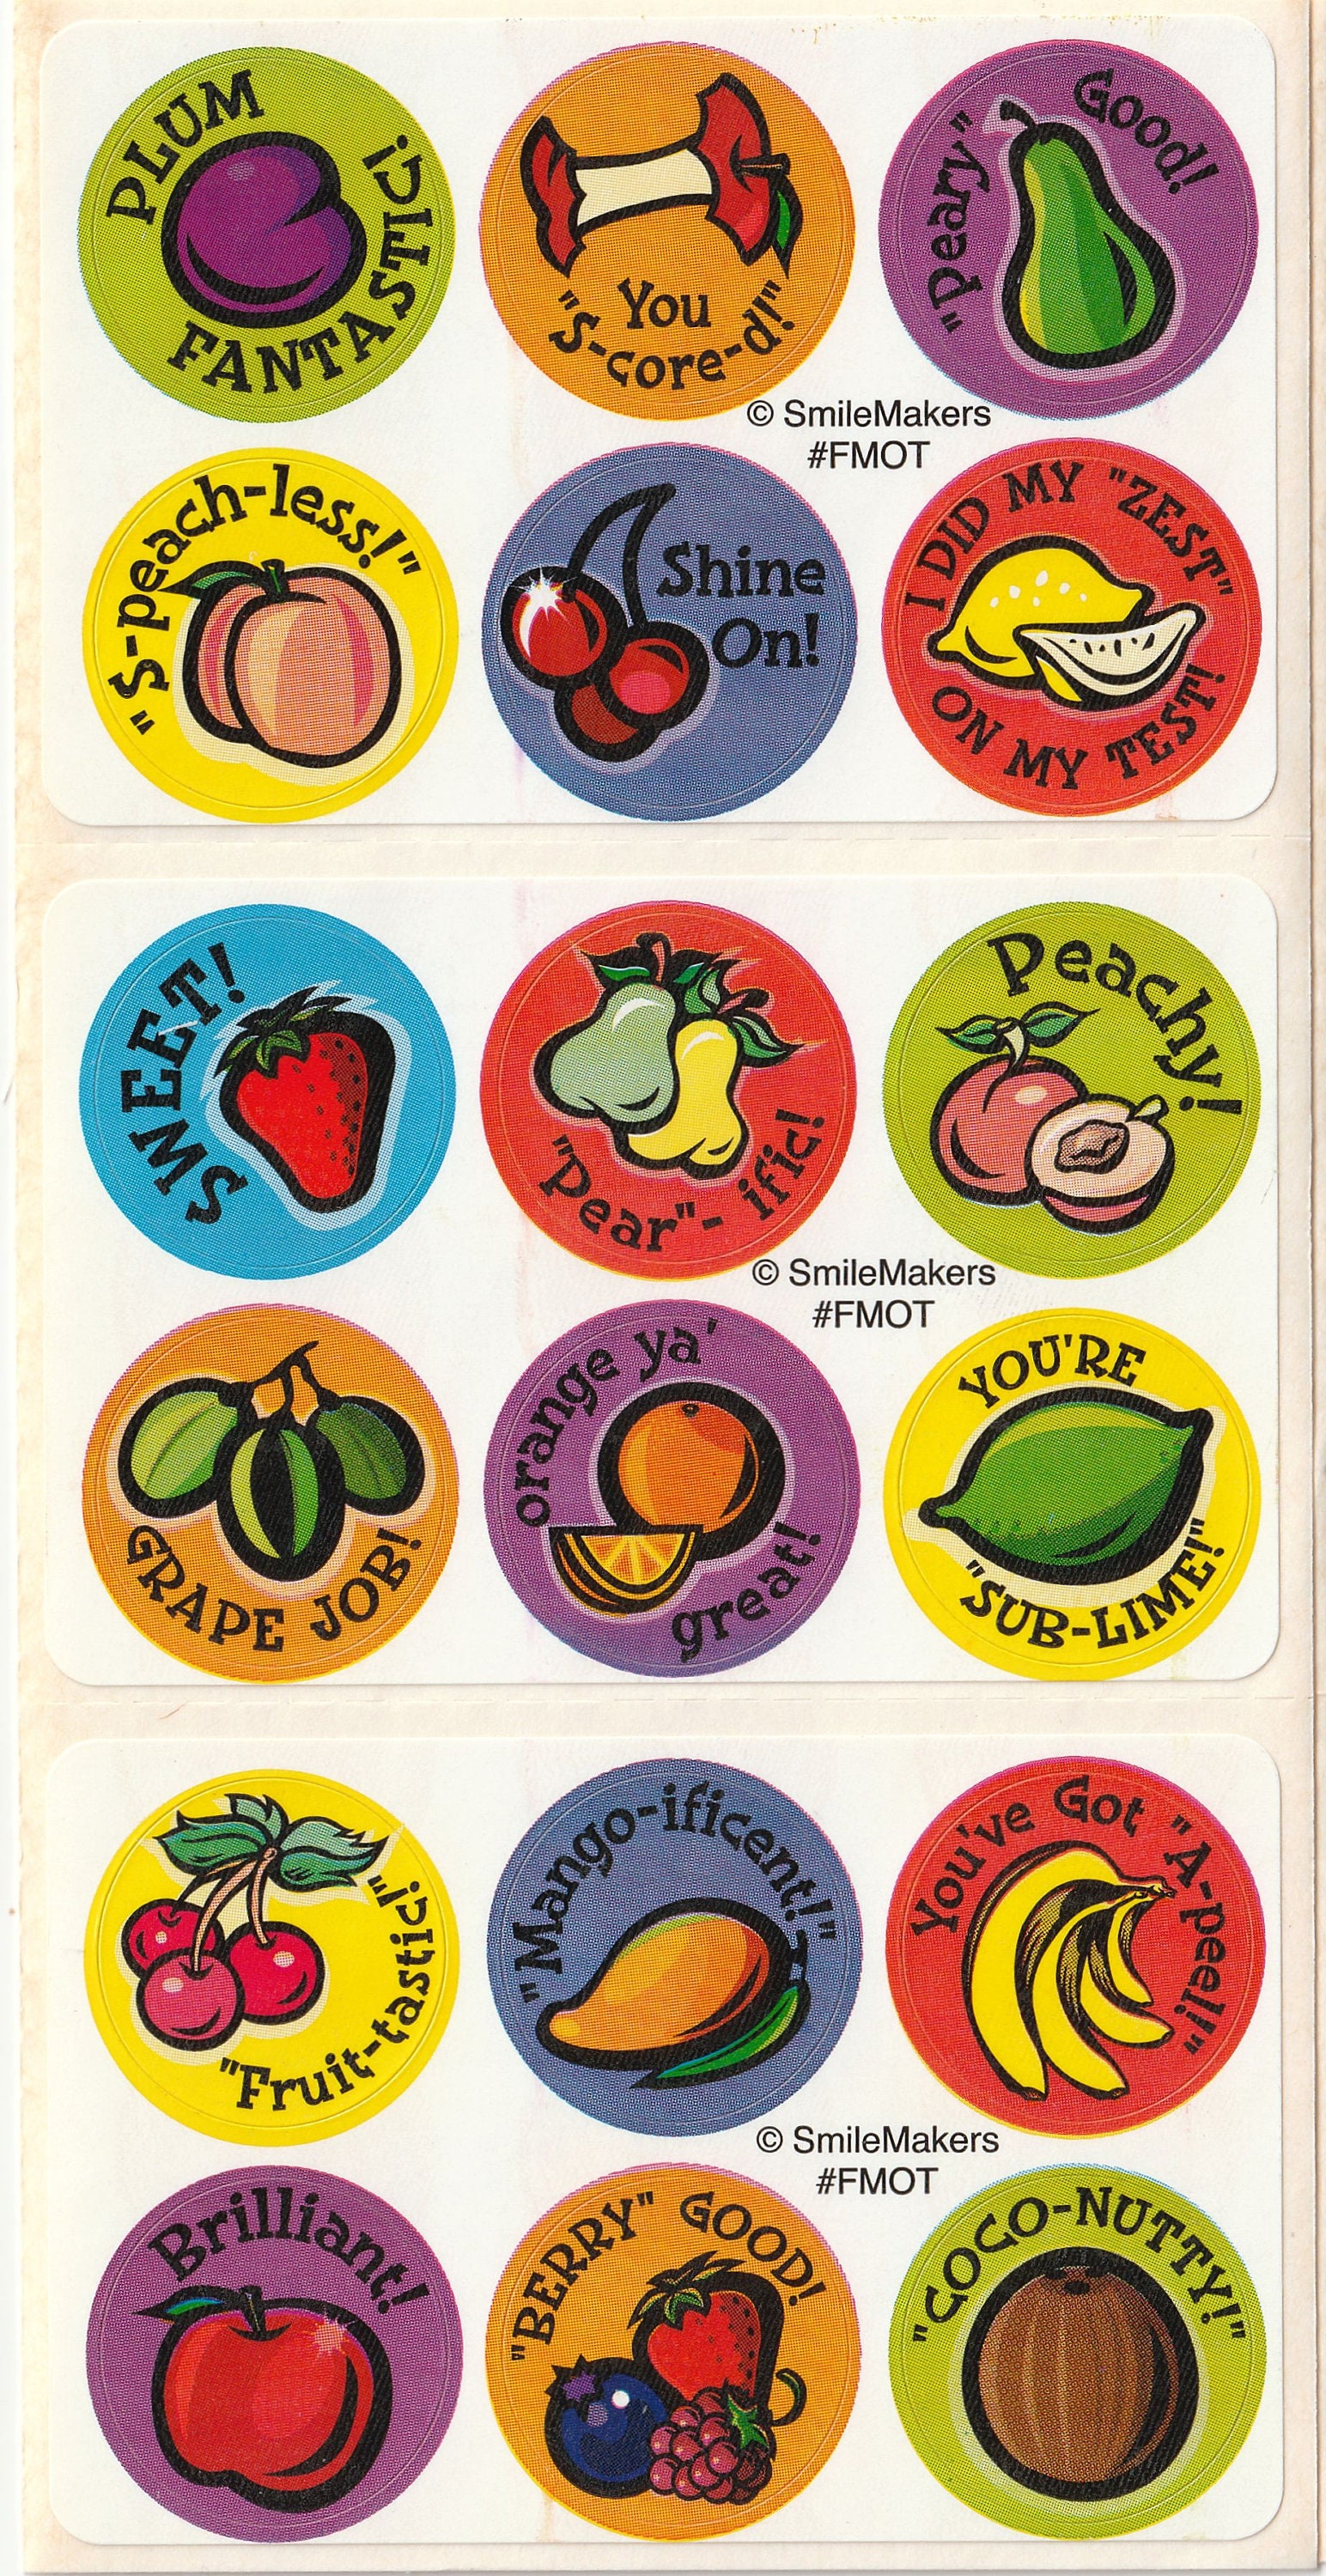 Emoji Stars Stinky Stickers Mixed - T-83030